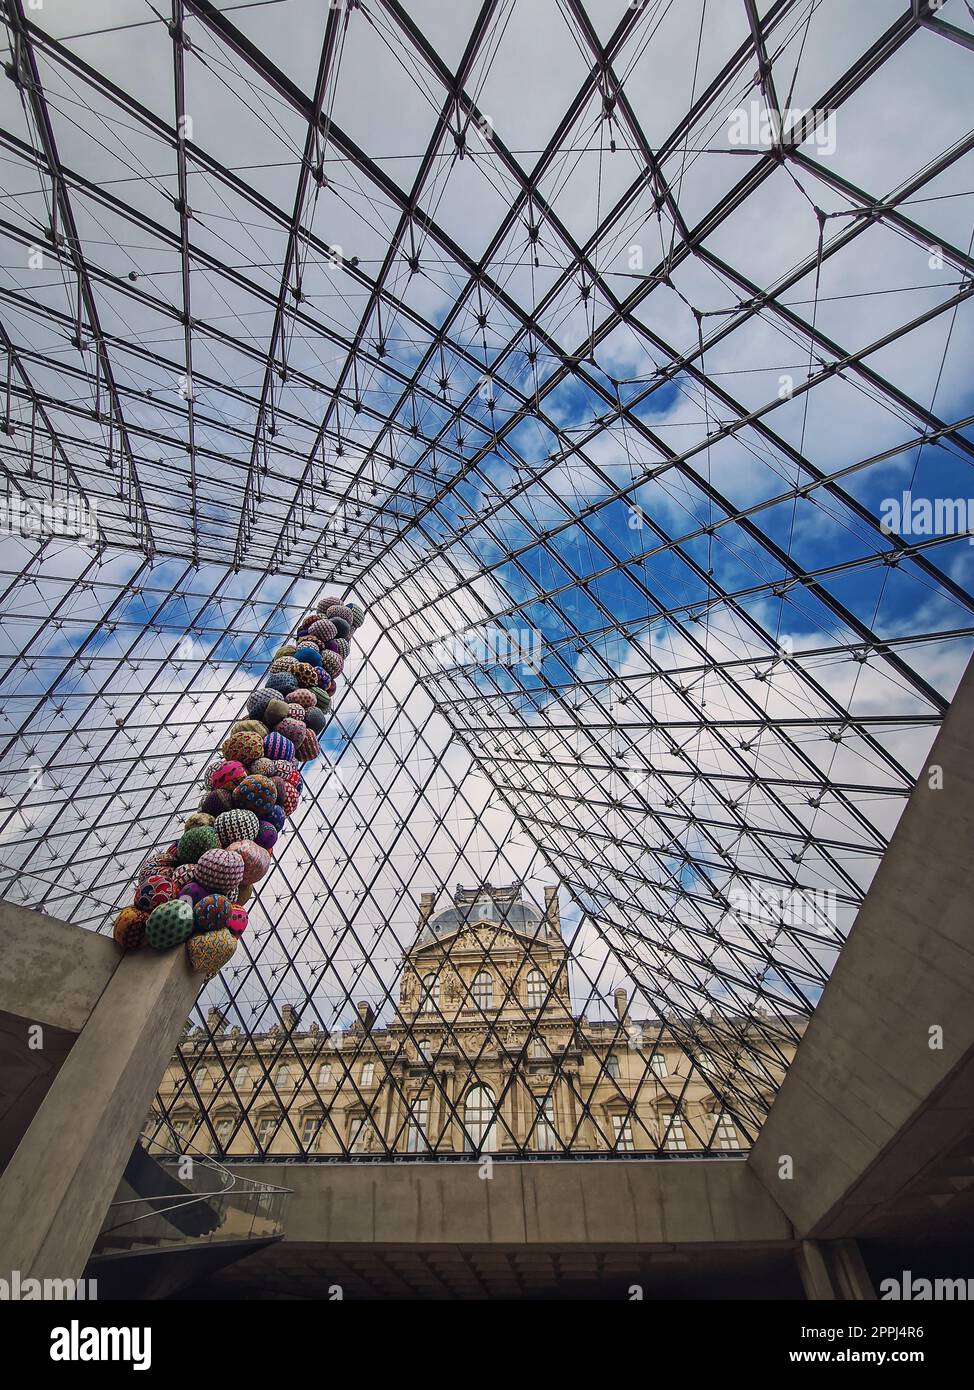 Sotto la piramide di vetro del Louvre, sfondo verticale. Splendidi dettagli architettonici con un mix astratto di stili classici e moderni Foto Stock